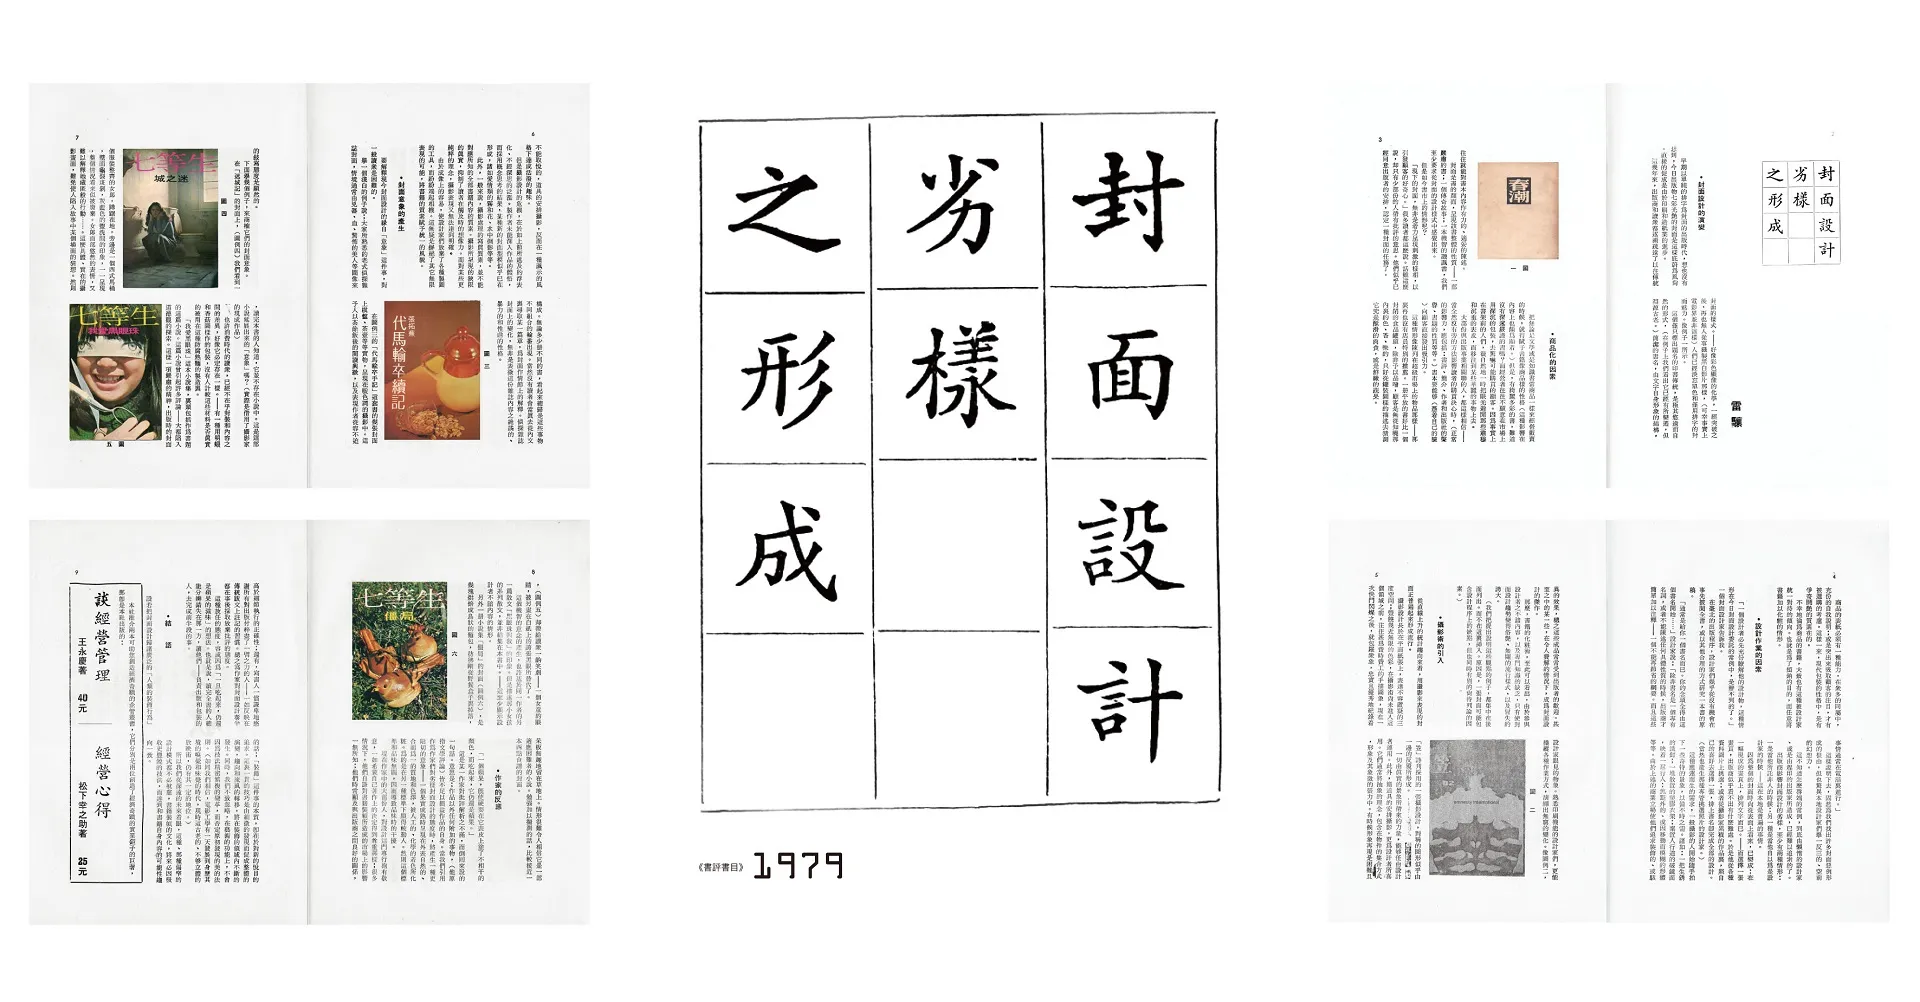 【圖4】雷驤刊於1979年《書評書目》發表〈封面設計劣樣之形成〉，評論黃華成的封面設計，幾乎就是1970年代對黃華成書封設計的唯一評論。-圖片